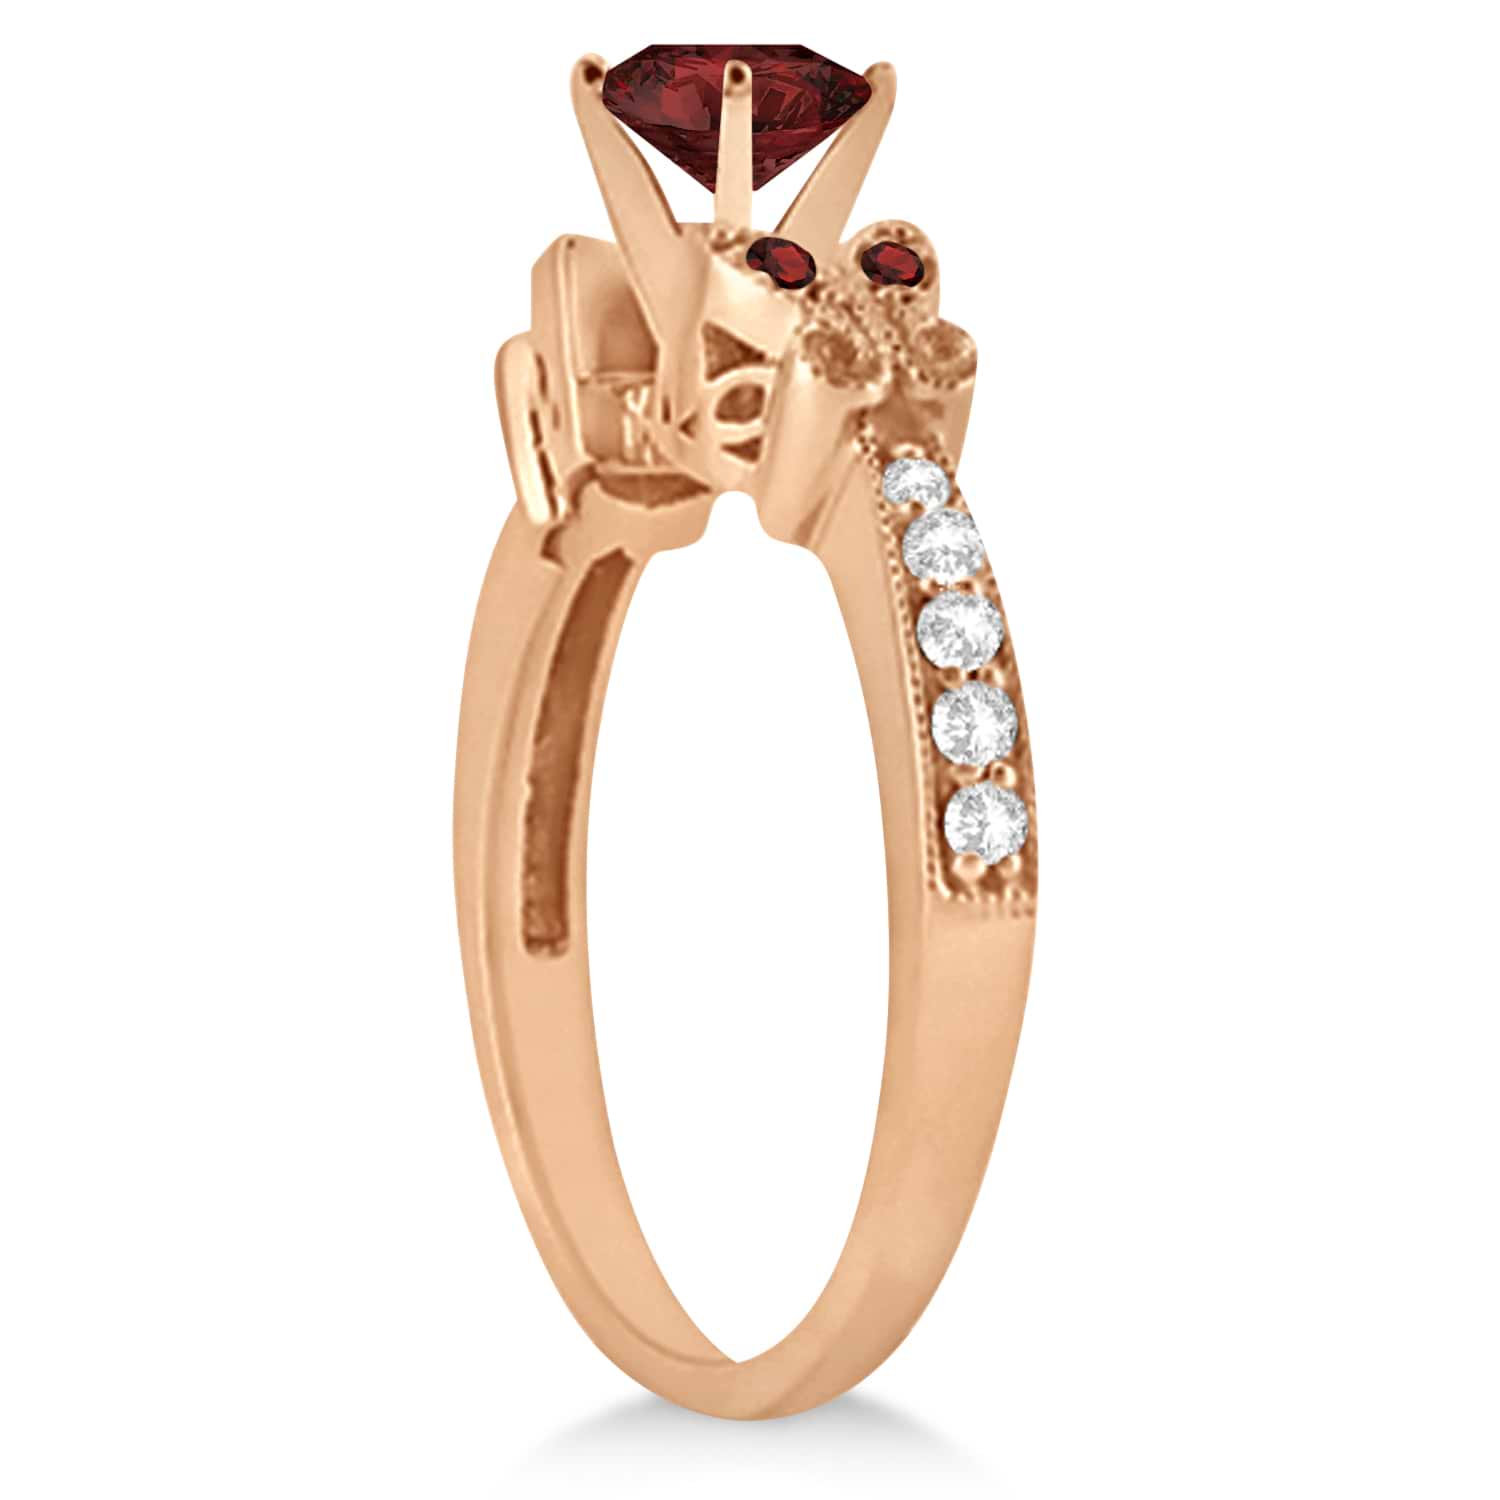 Butterfly Genuine Garnet & Diamond Engagement Ring 14K Rose Gold 1.28ctw